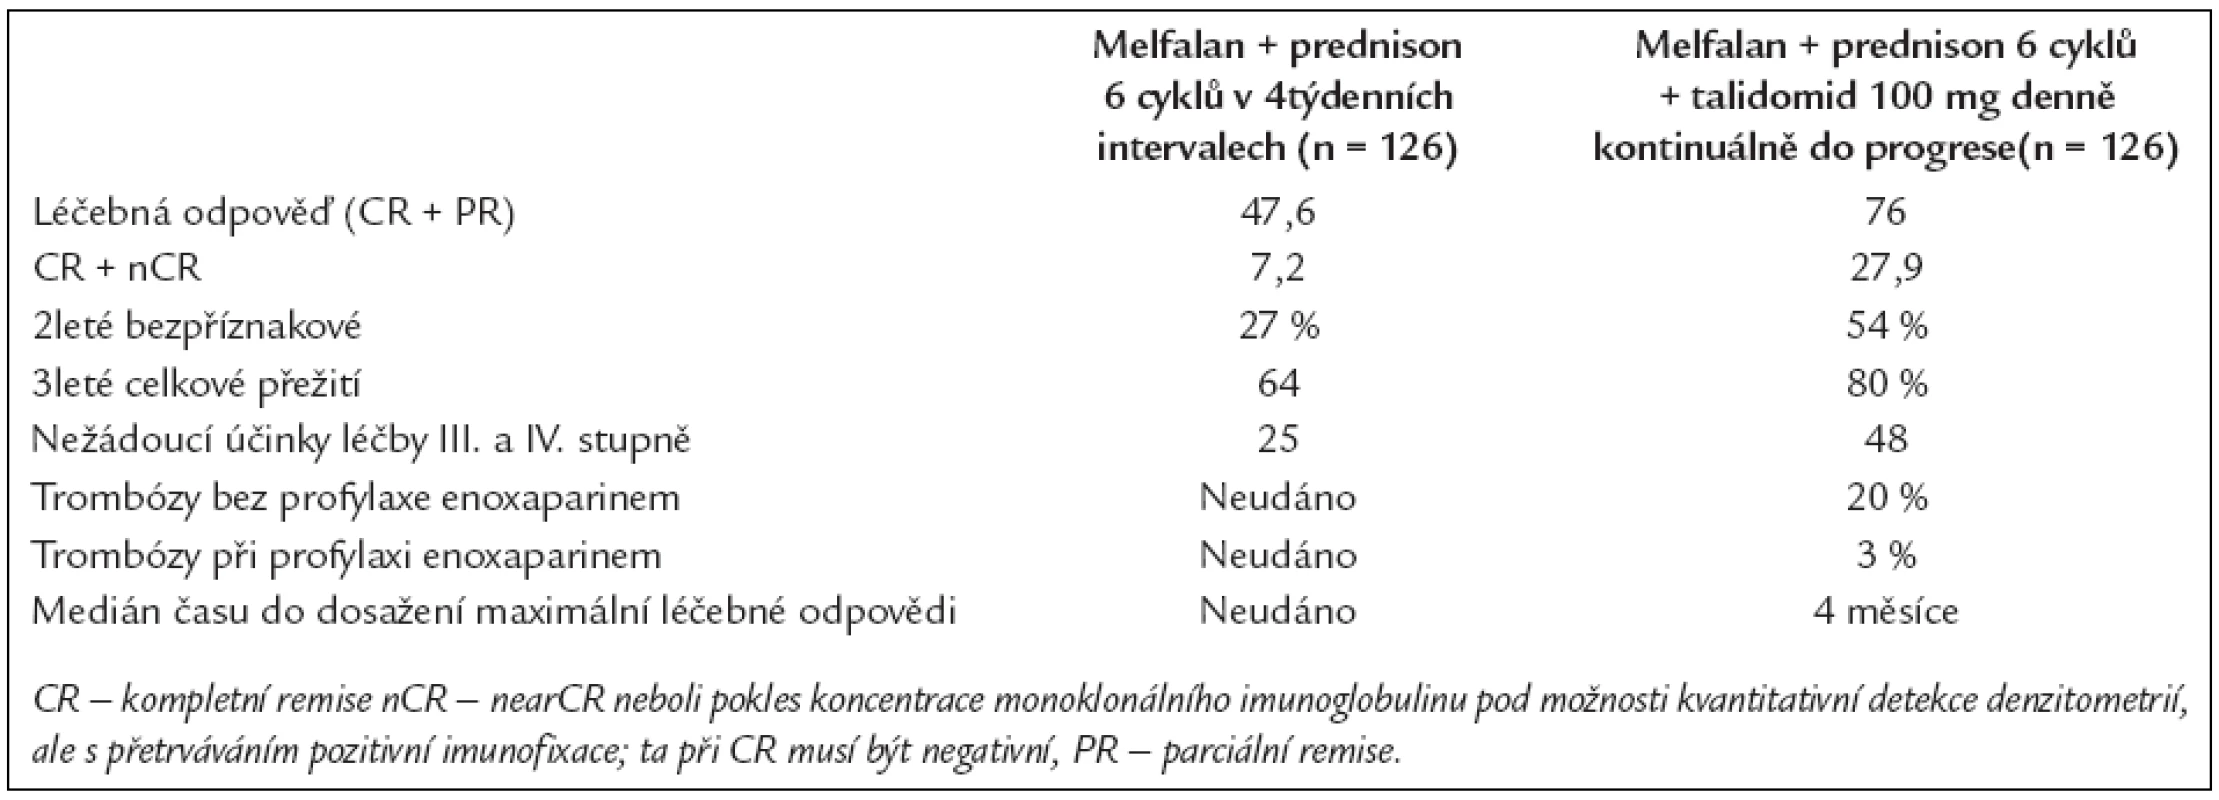 Srovnání výsledků léčby při použití melfalanu + prednisonu anebo melfalanu + prednisonu + talidomidu (18).